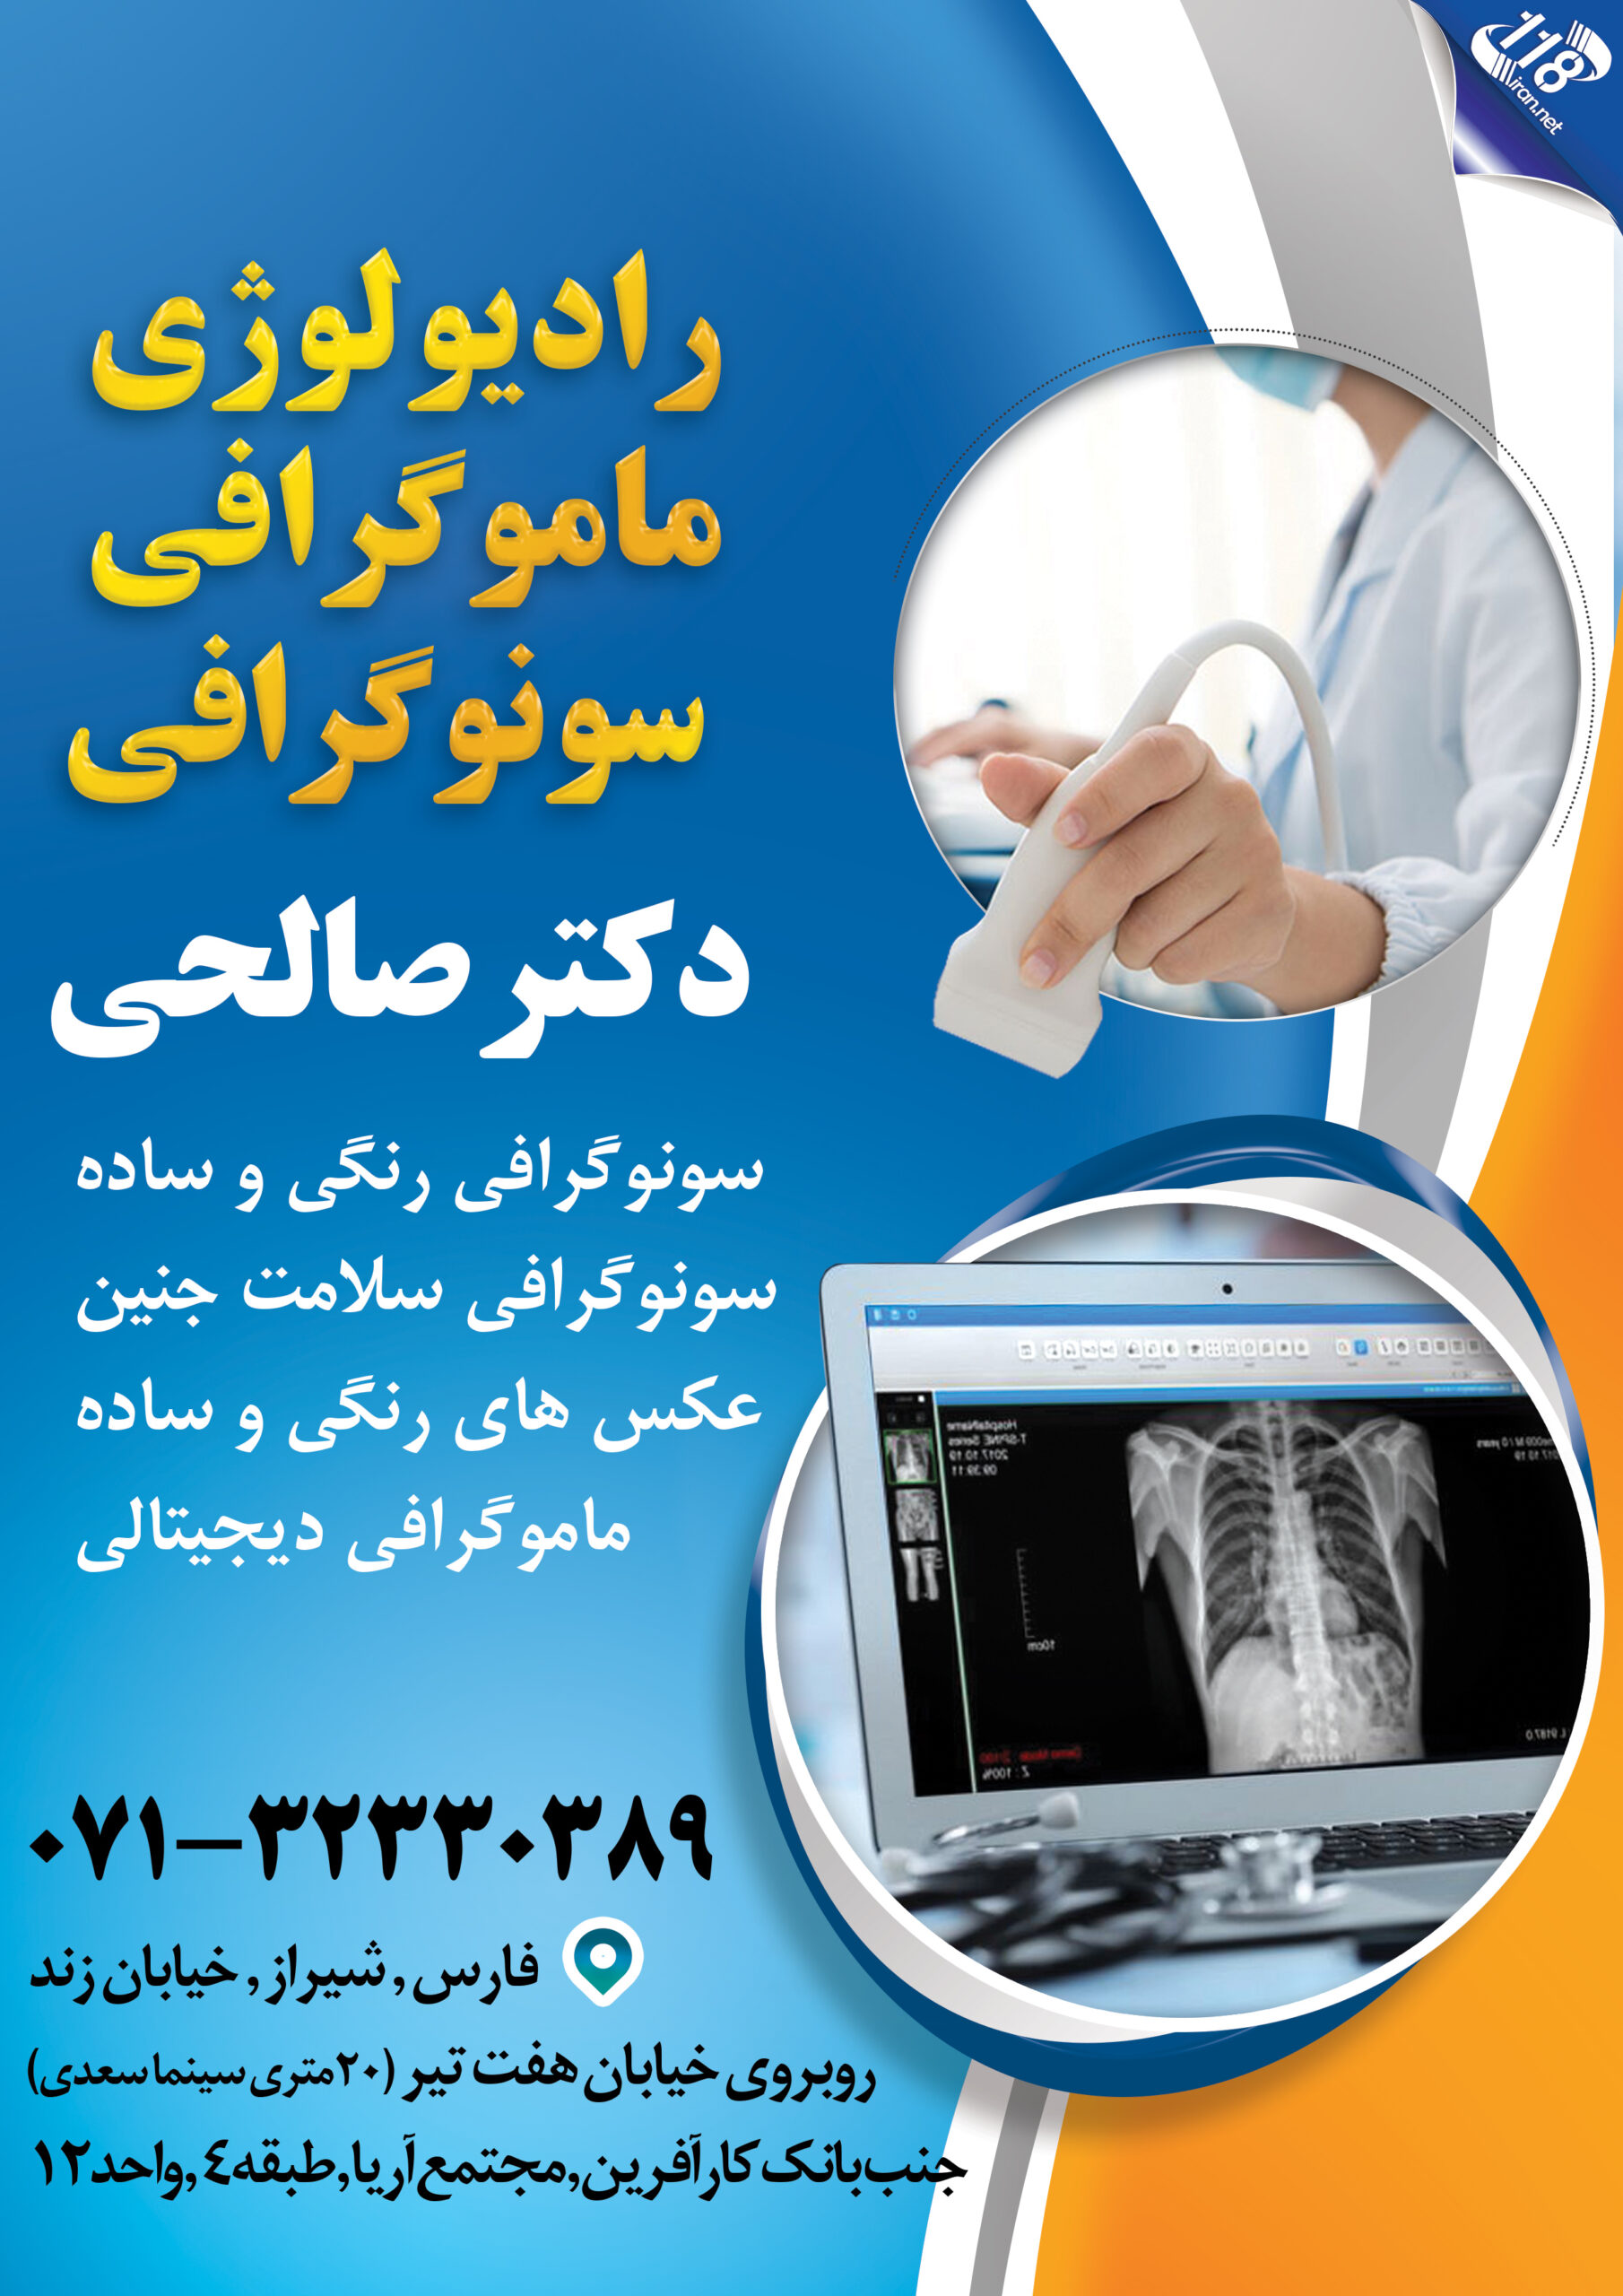  رادیولوژی ماموگرافی و سونوگرافی دکتر صالحی 